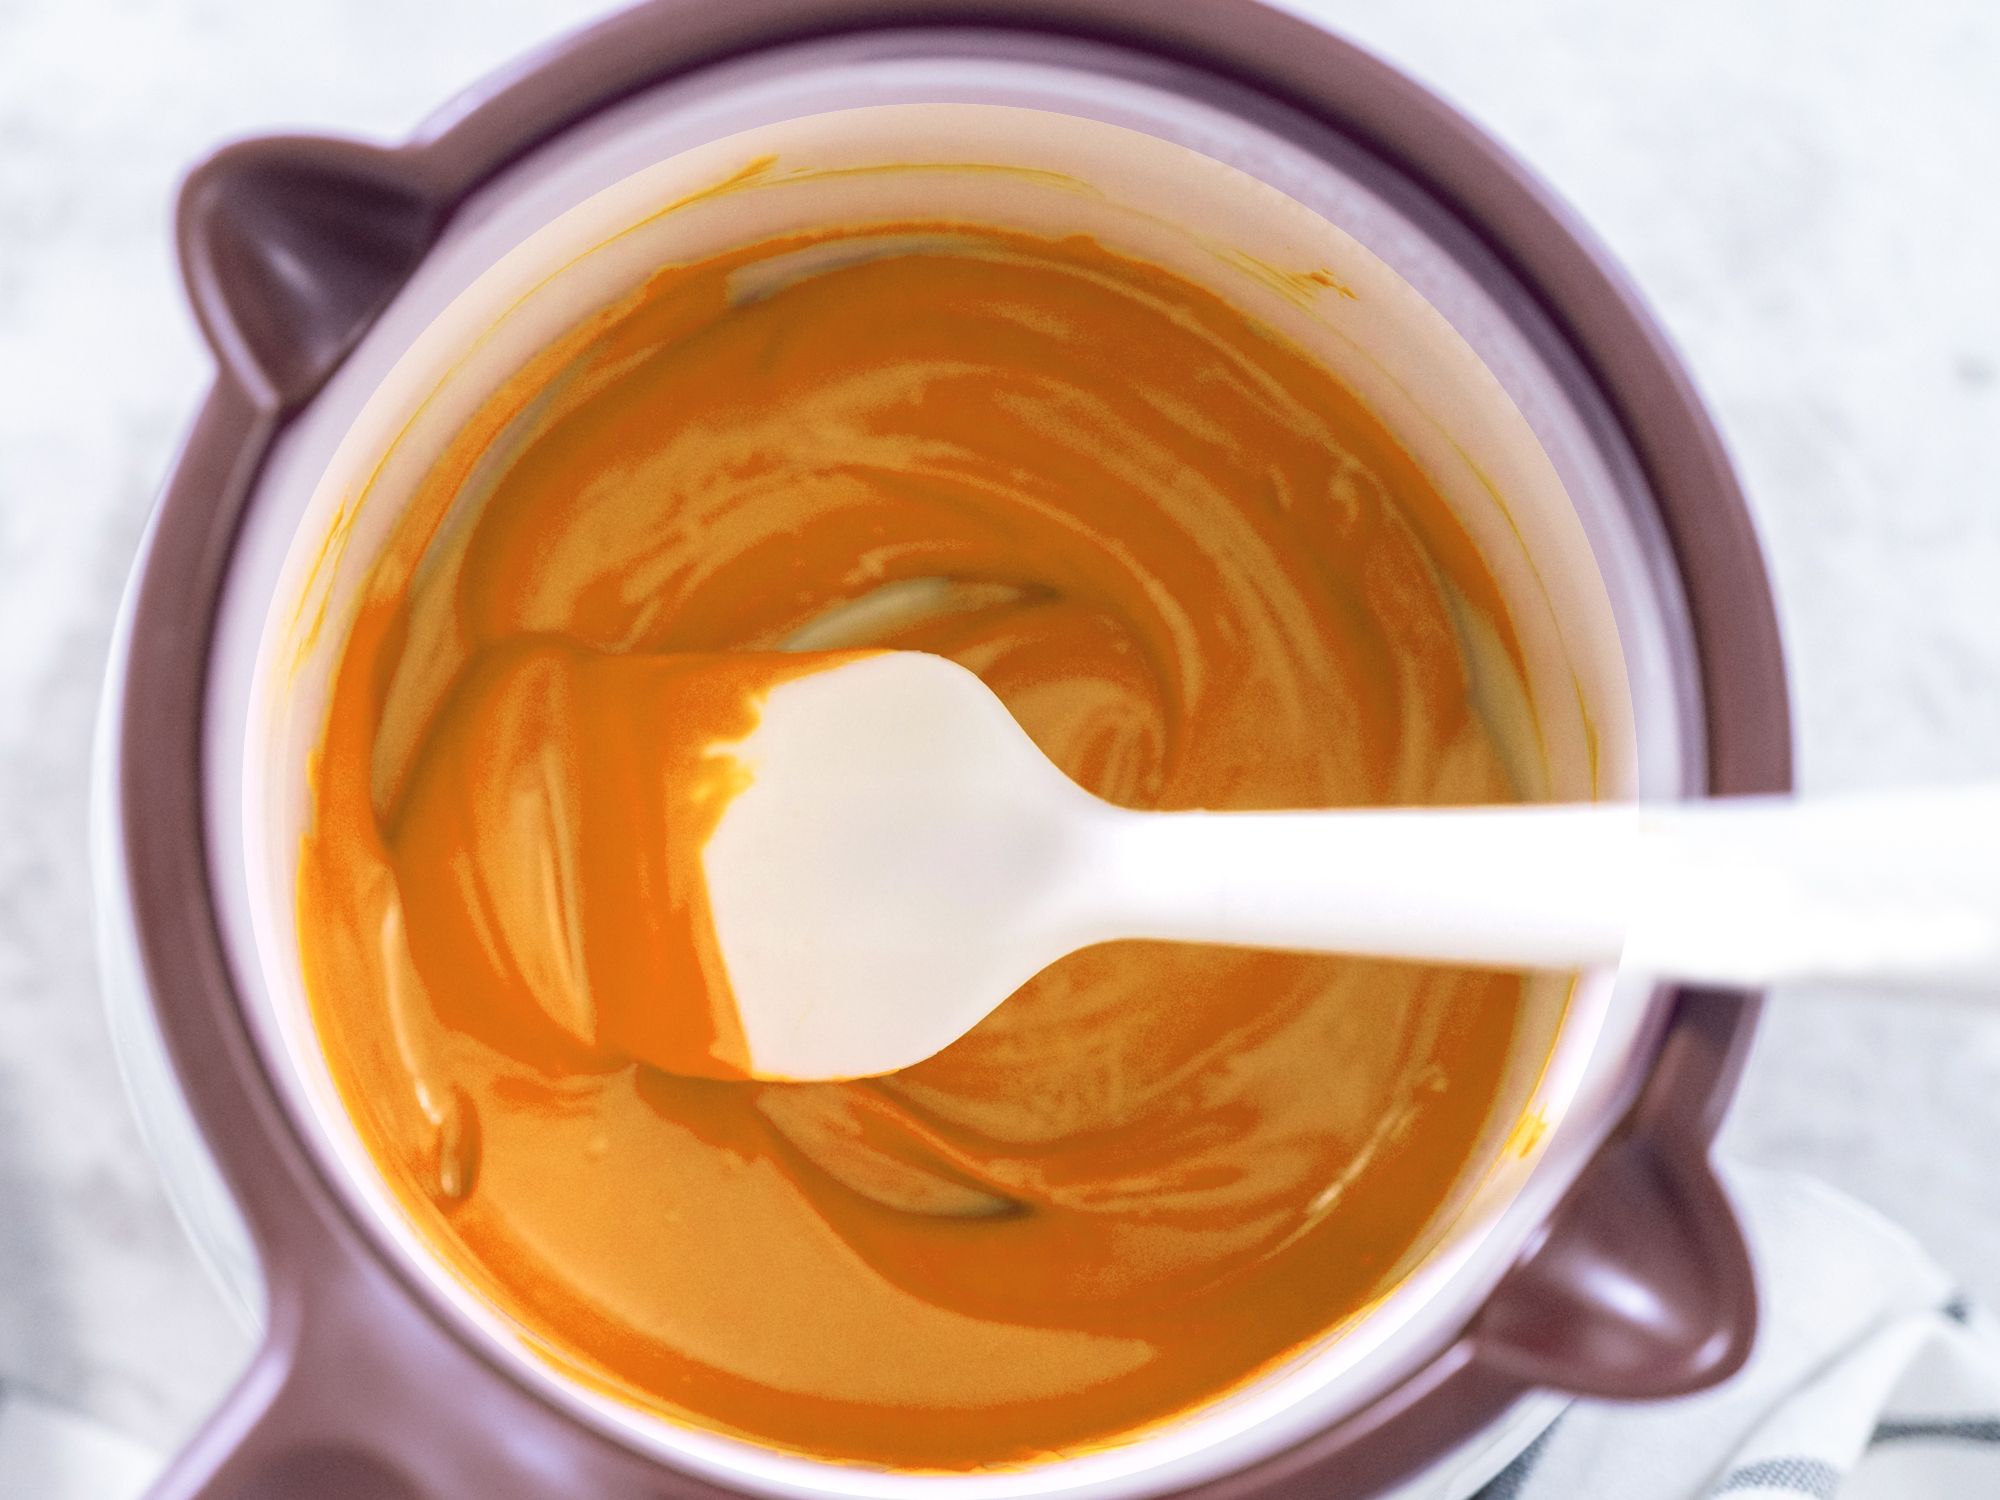 Bunte Candy Melts Glasur 250g Orange aromatisiert schmelzen